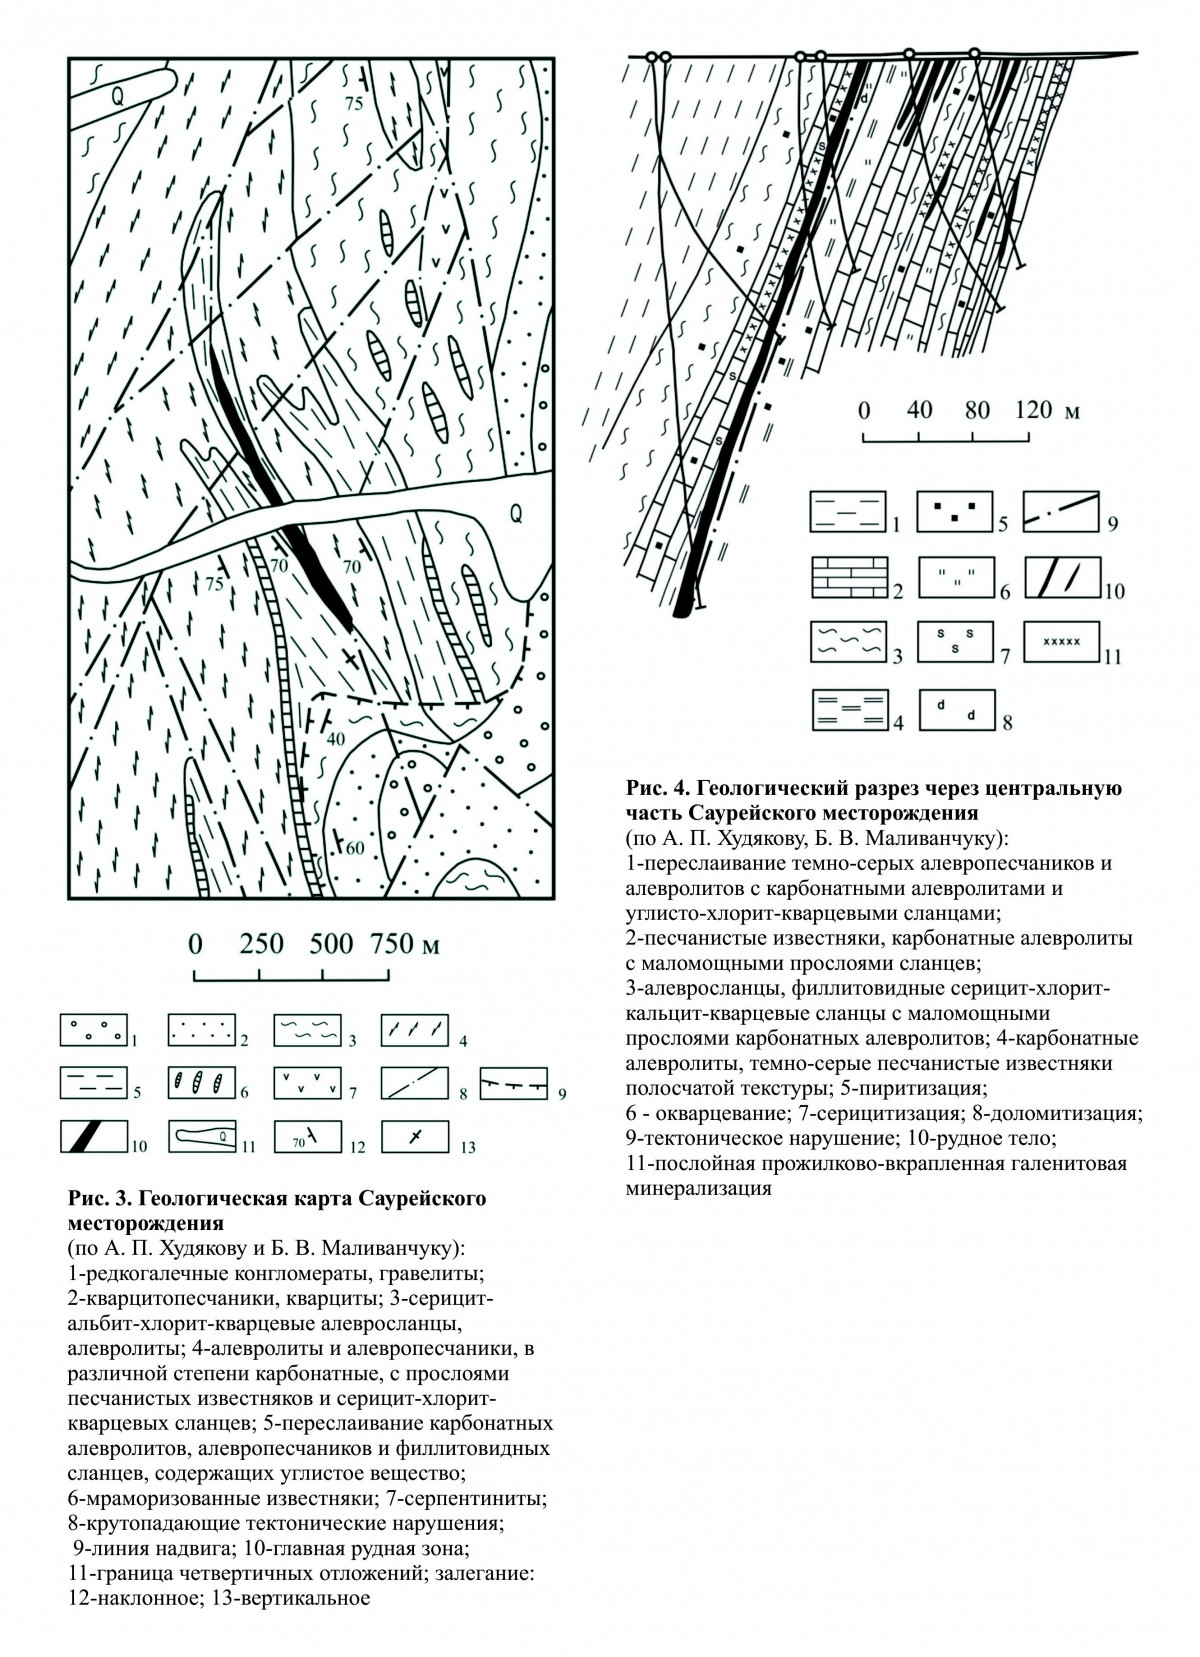 Схема и разрез Саурейского месторождения. Минералы и месторождения. webmineral.ru